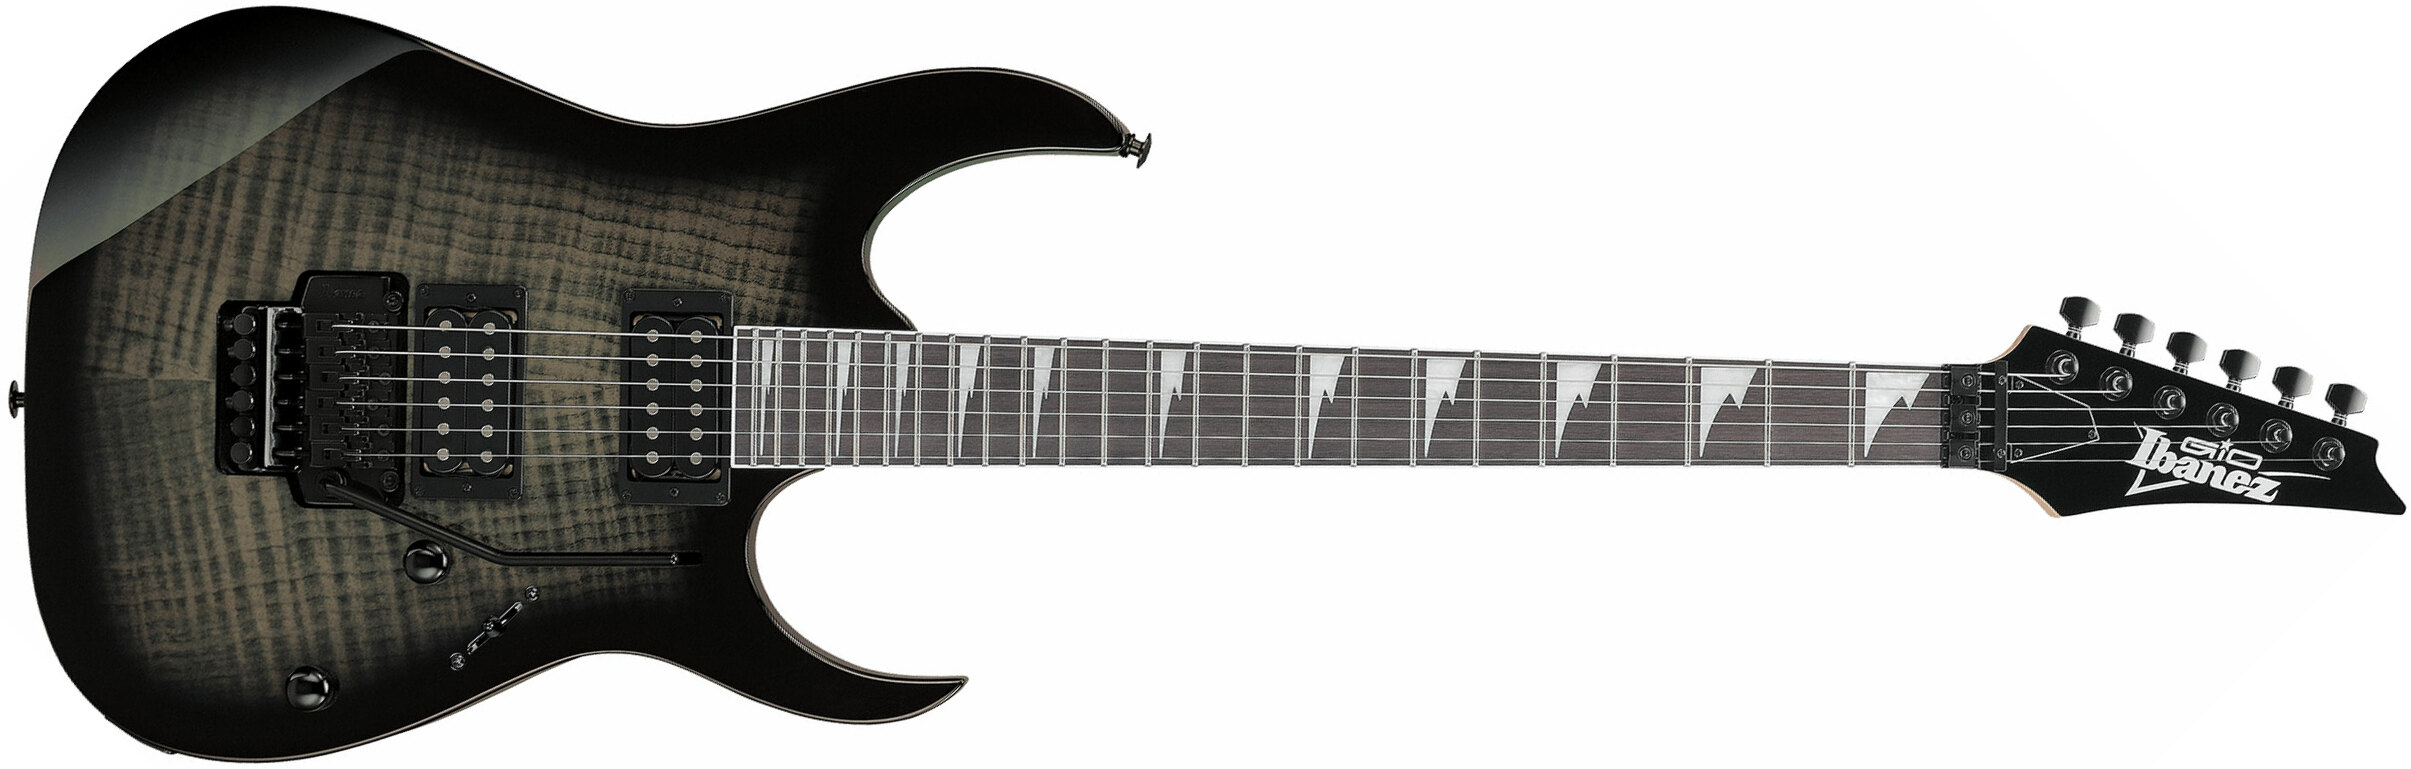 Ibanez Grg320fa Tks Gio 2h Fr Pur - Transparent Black Sunburst - Guitare Électrique Forme Str - Main picture